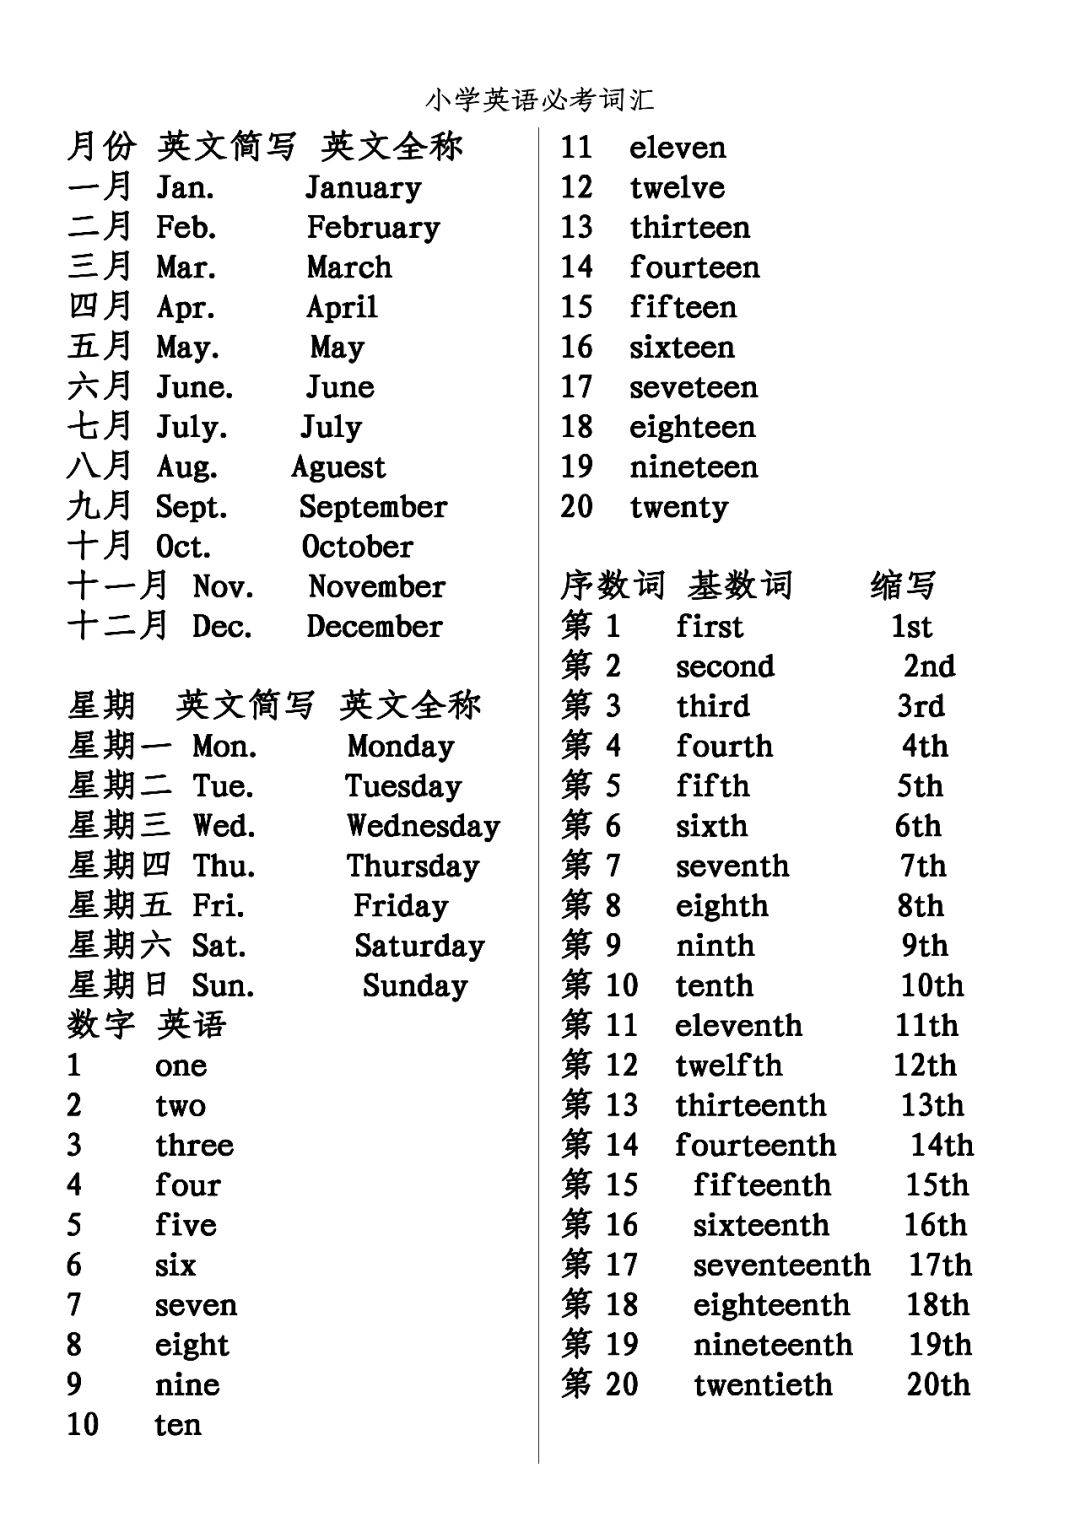 小学英语必会词汇:月份,星期,数字,序数词